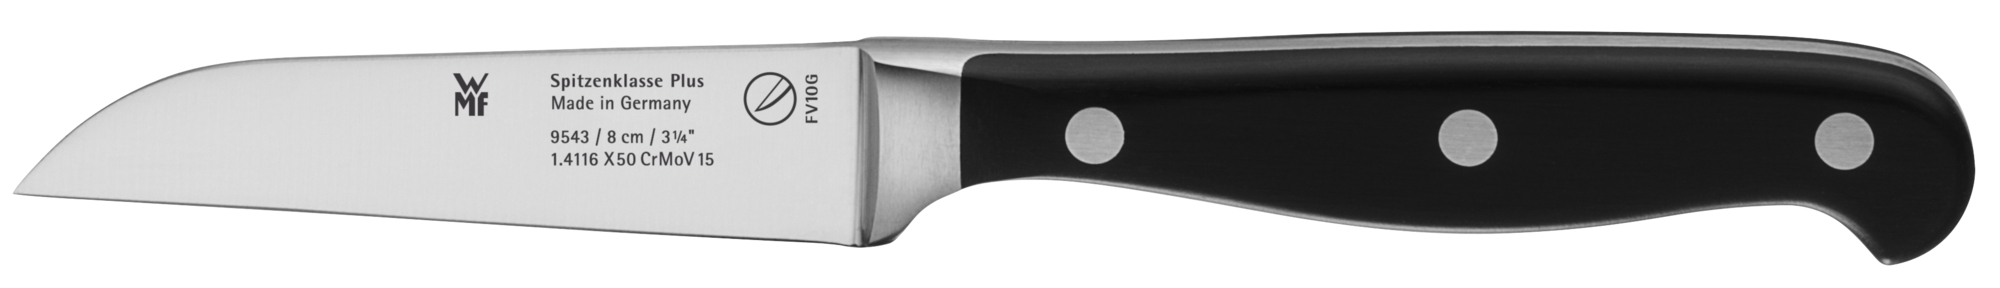 Овощной нож Spitzenklasse Plus 8 см приспособление для нарезки овощей широкими полосками tescoma